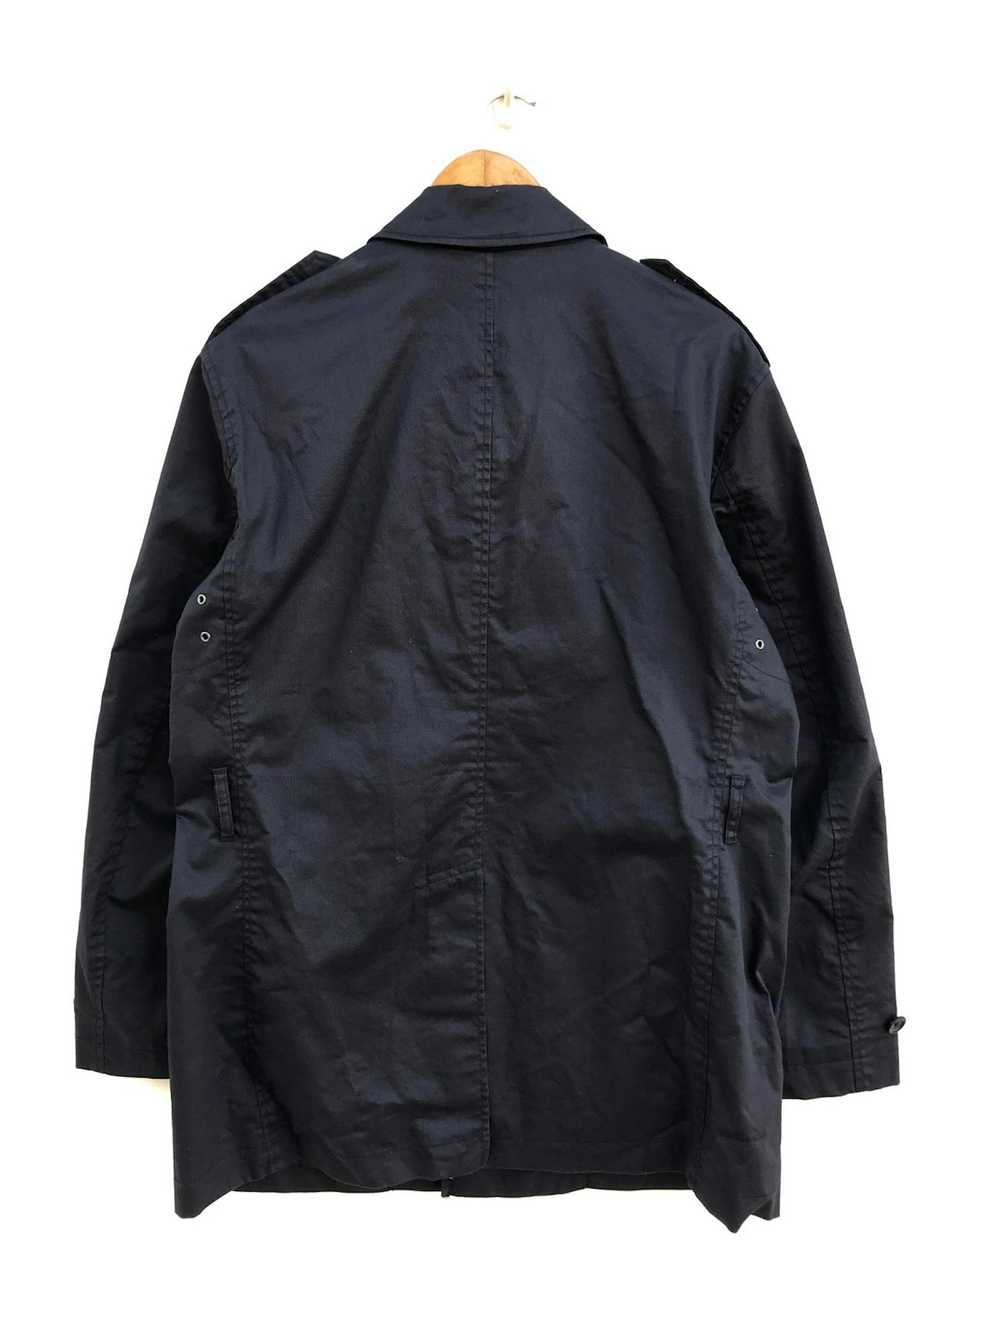 Uniqlo Uniqlo Coated Cloth Long Jacket Parka - image 2